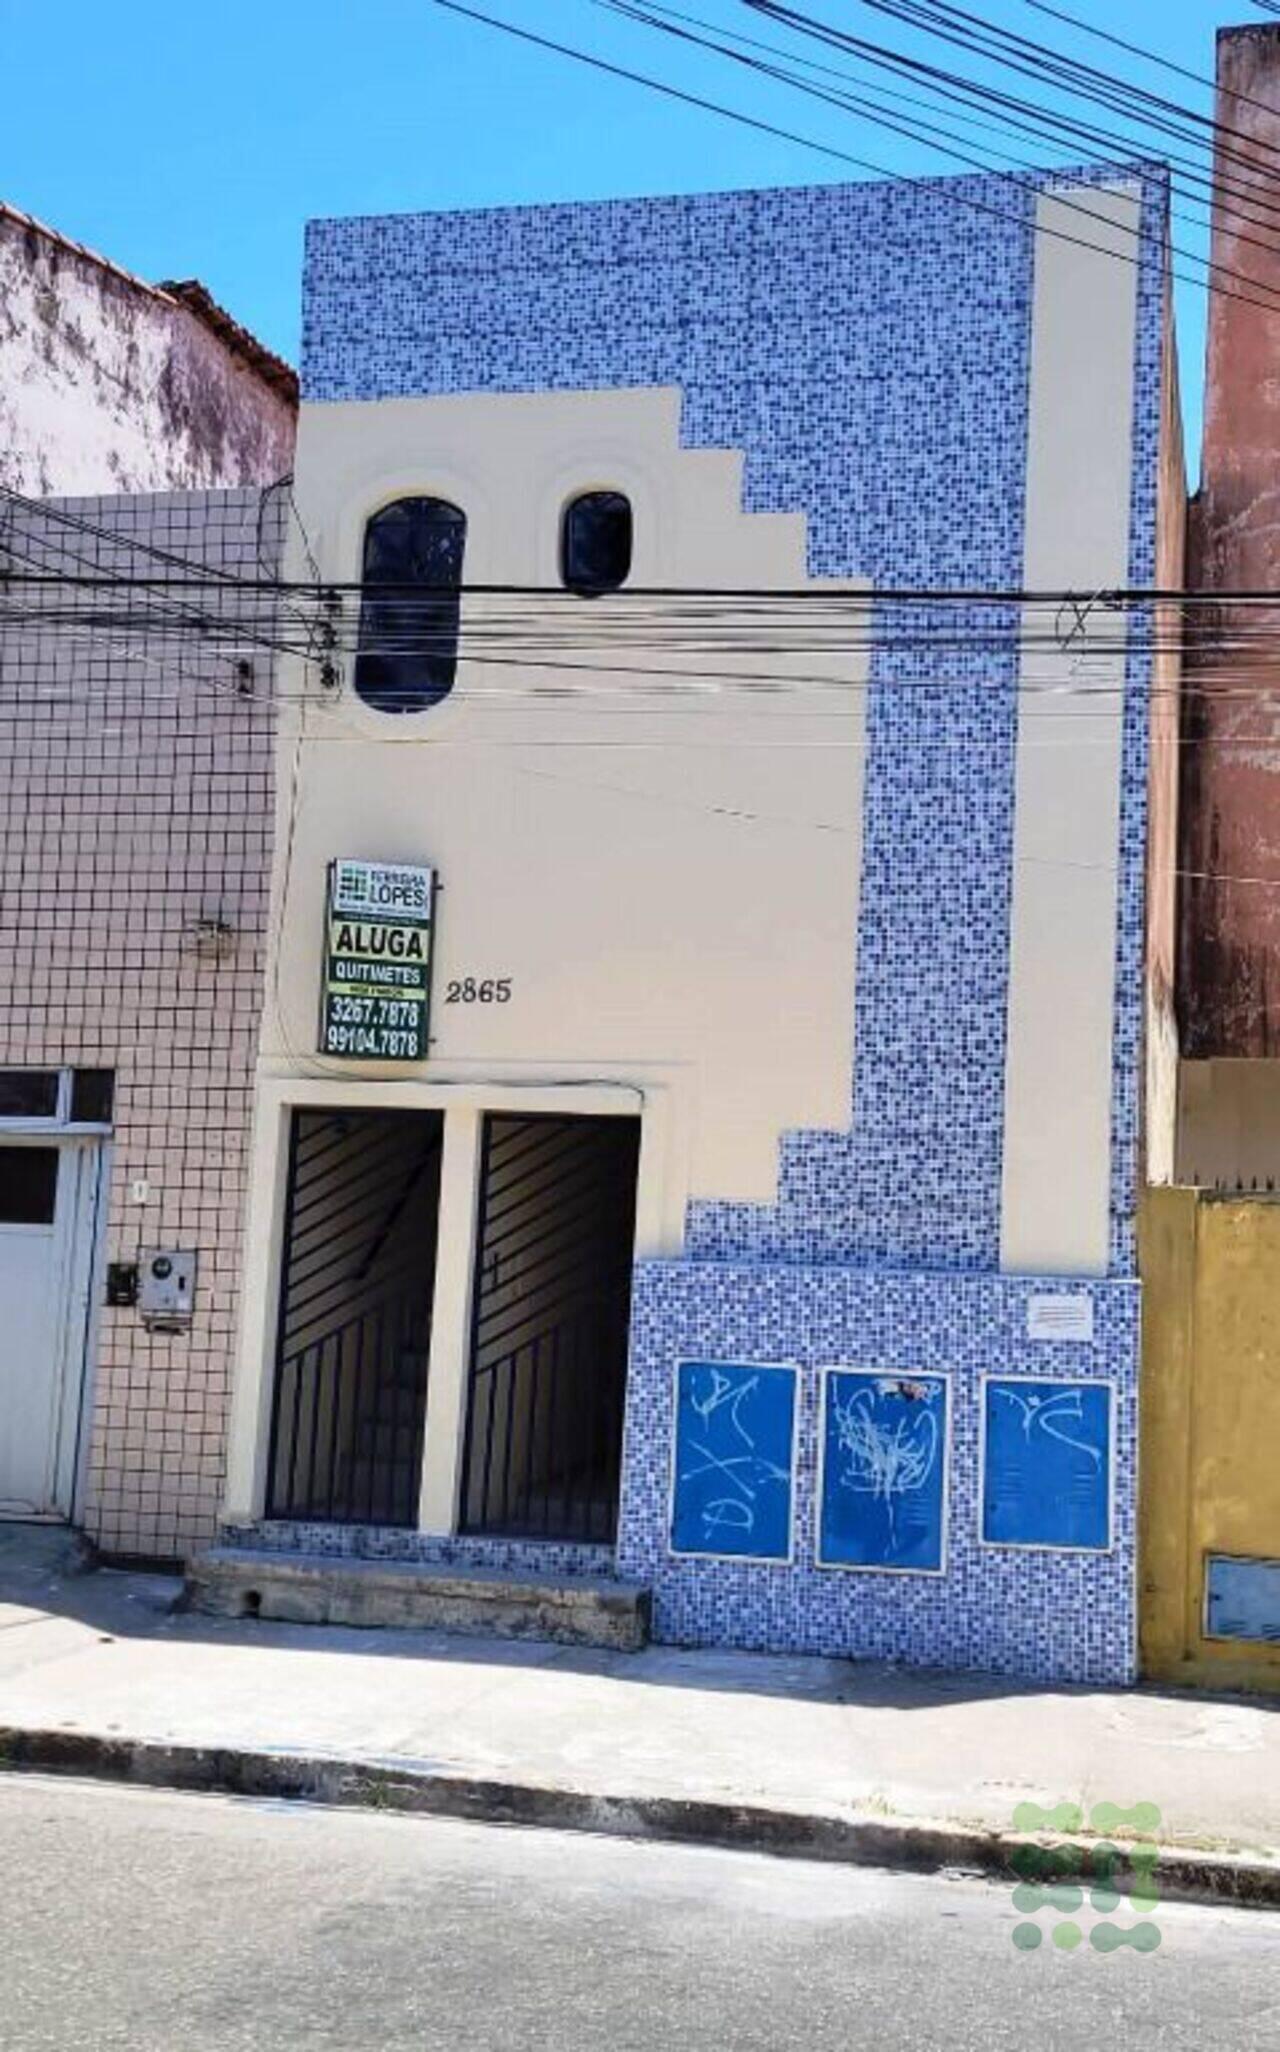 Kitnet Joaquim Távora, Fortaleza - CE